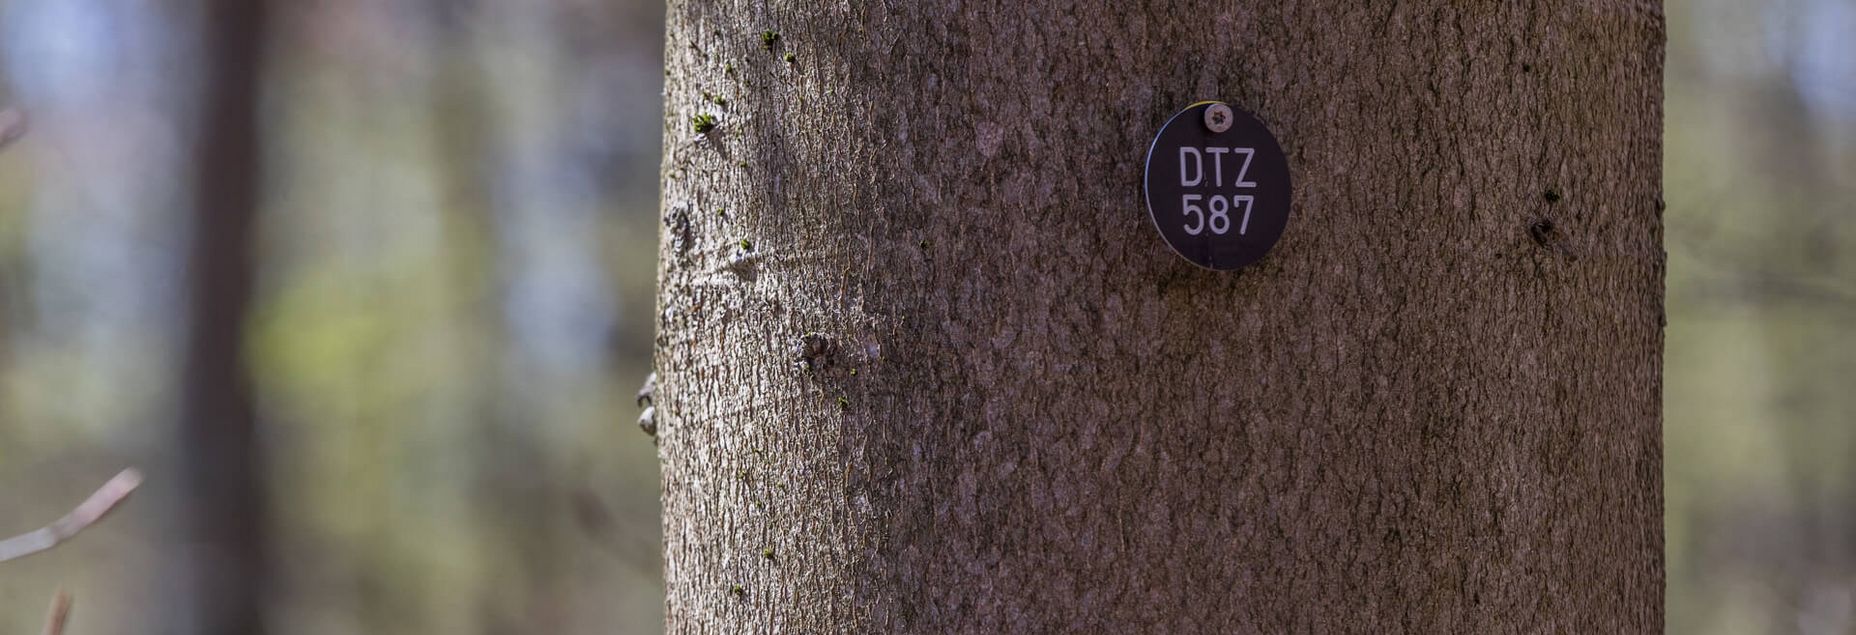 Baum DTZ 587 - Plakette